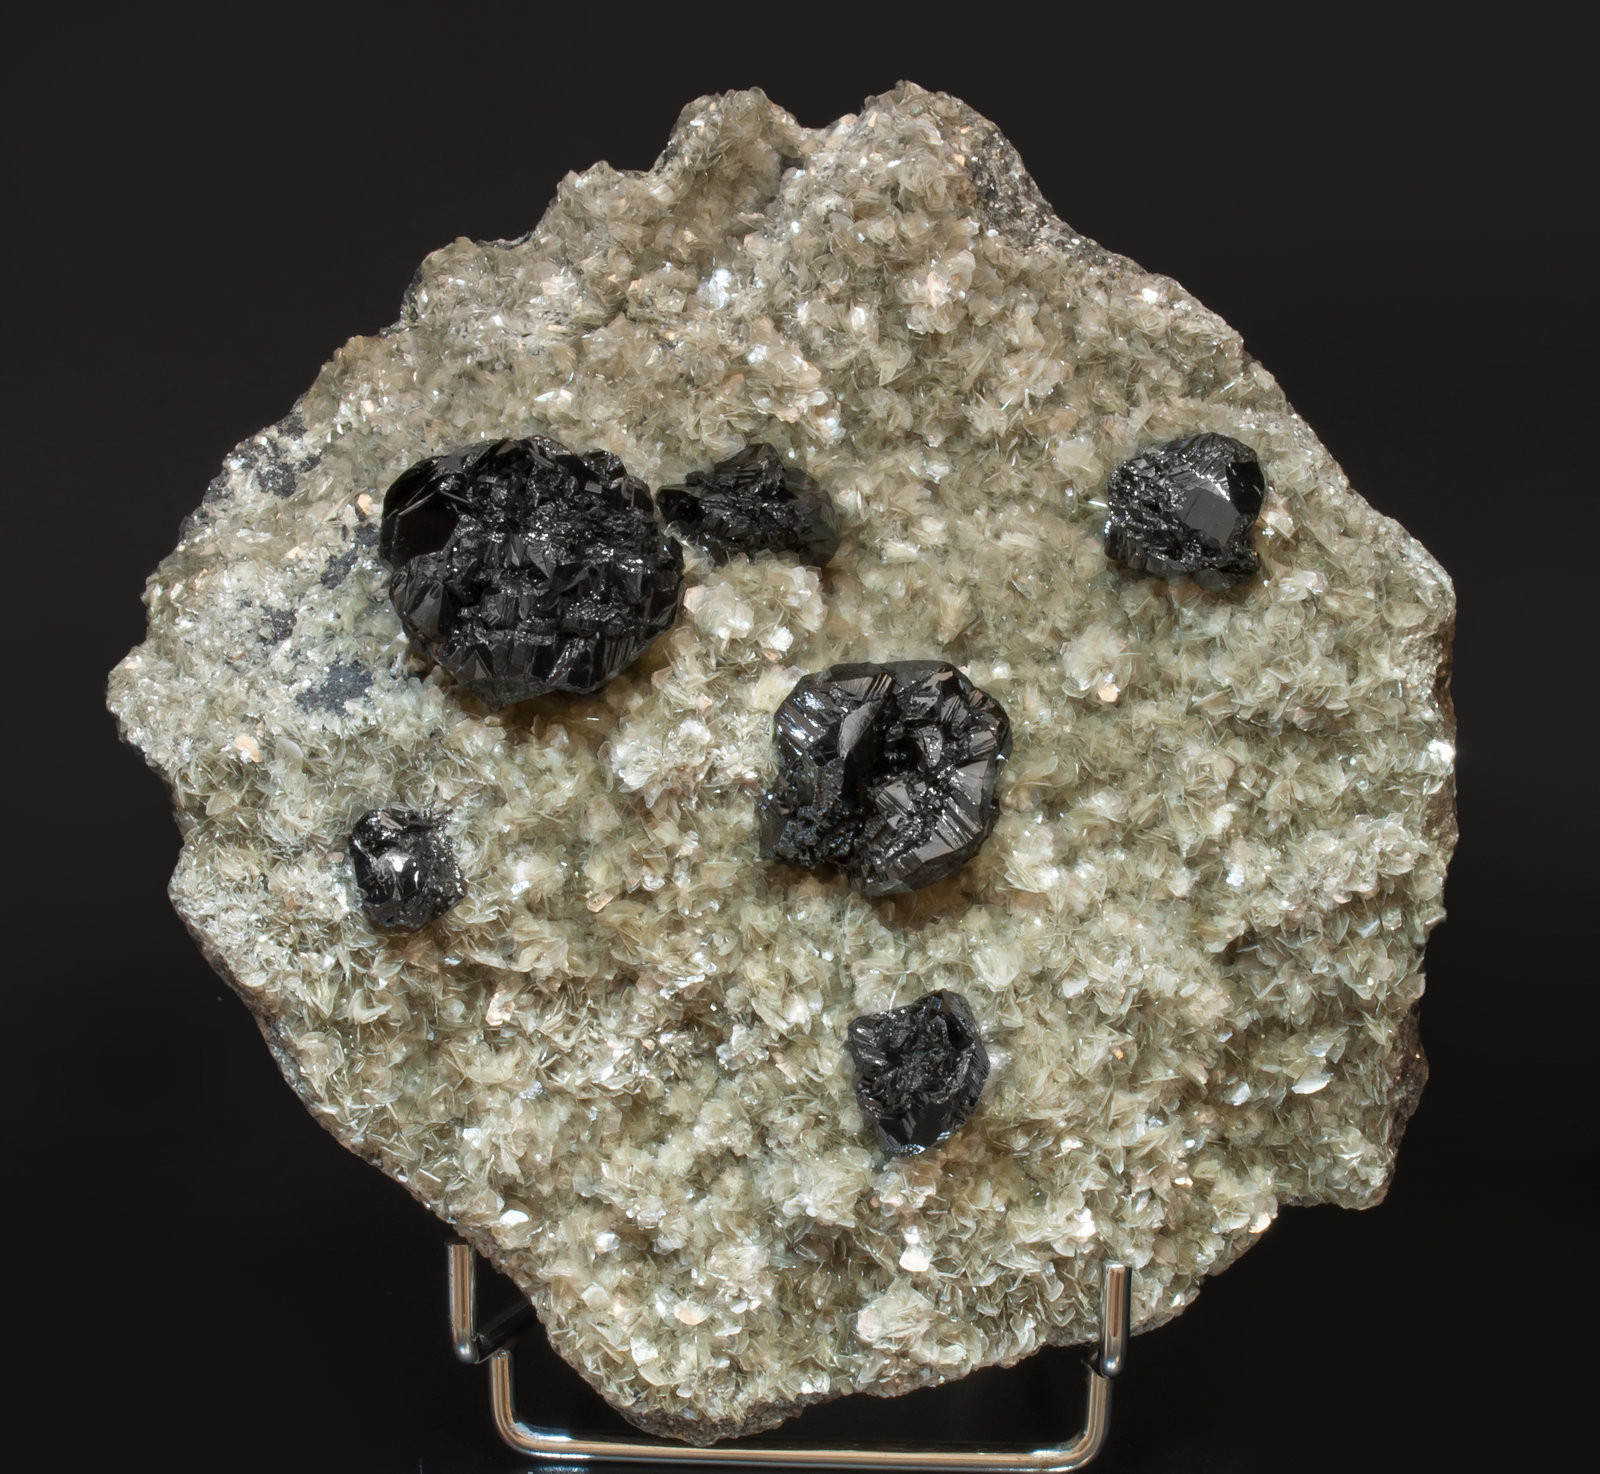 specimens/s_imagesAF6/Cassiterite-TM37AF6f.jpg